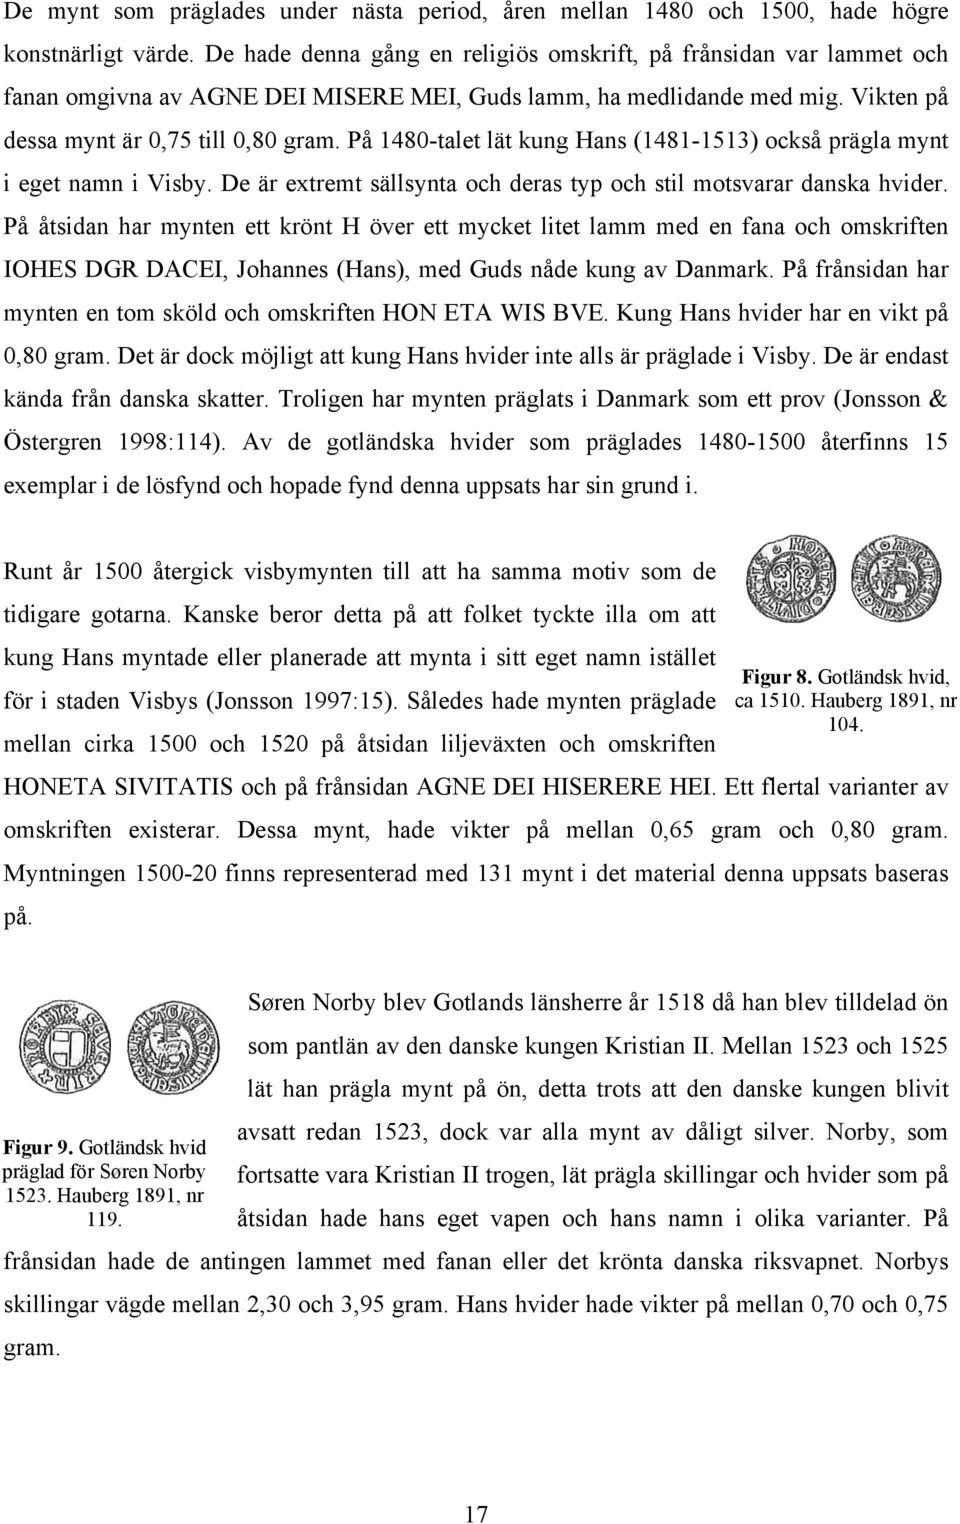 På 1480-talet lät kung Hans (1481-1513) också prägla mynt i eget namn i Visby. De är extremt sällsynta och deras typ och stil motsvarar danska hvider.